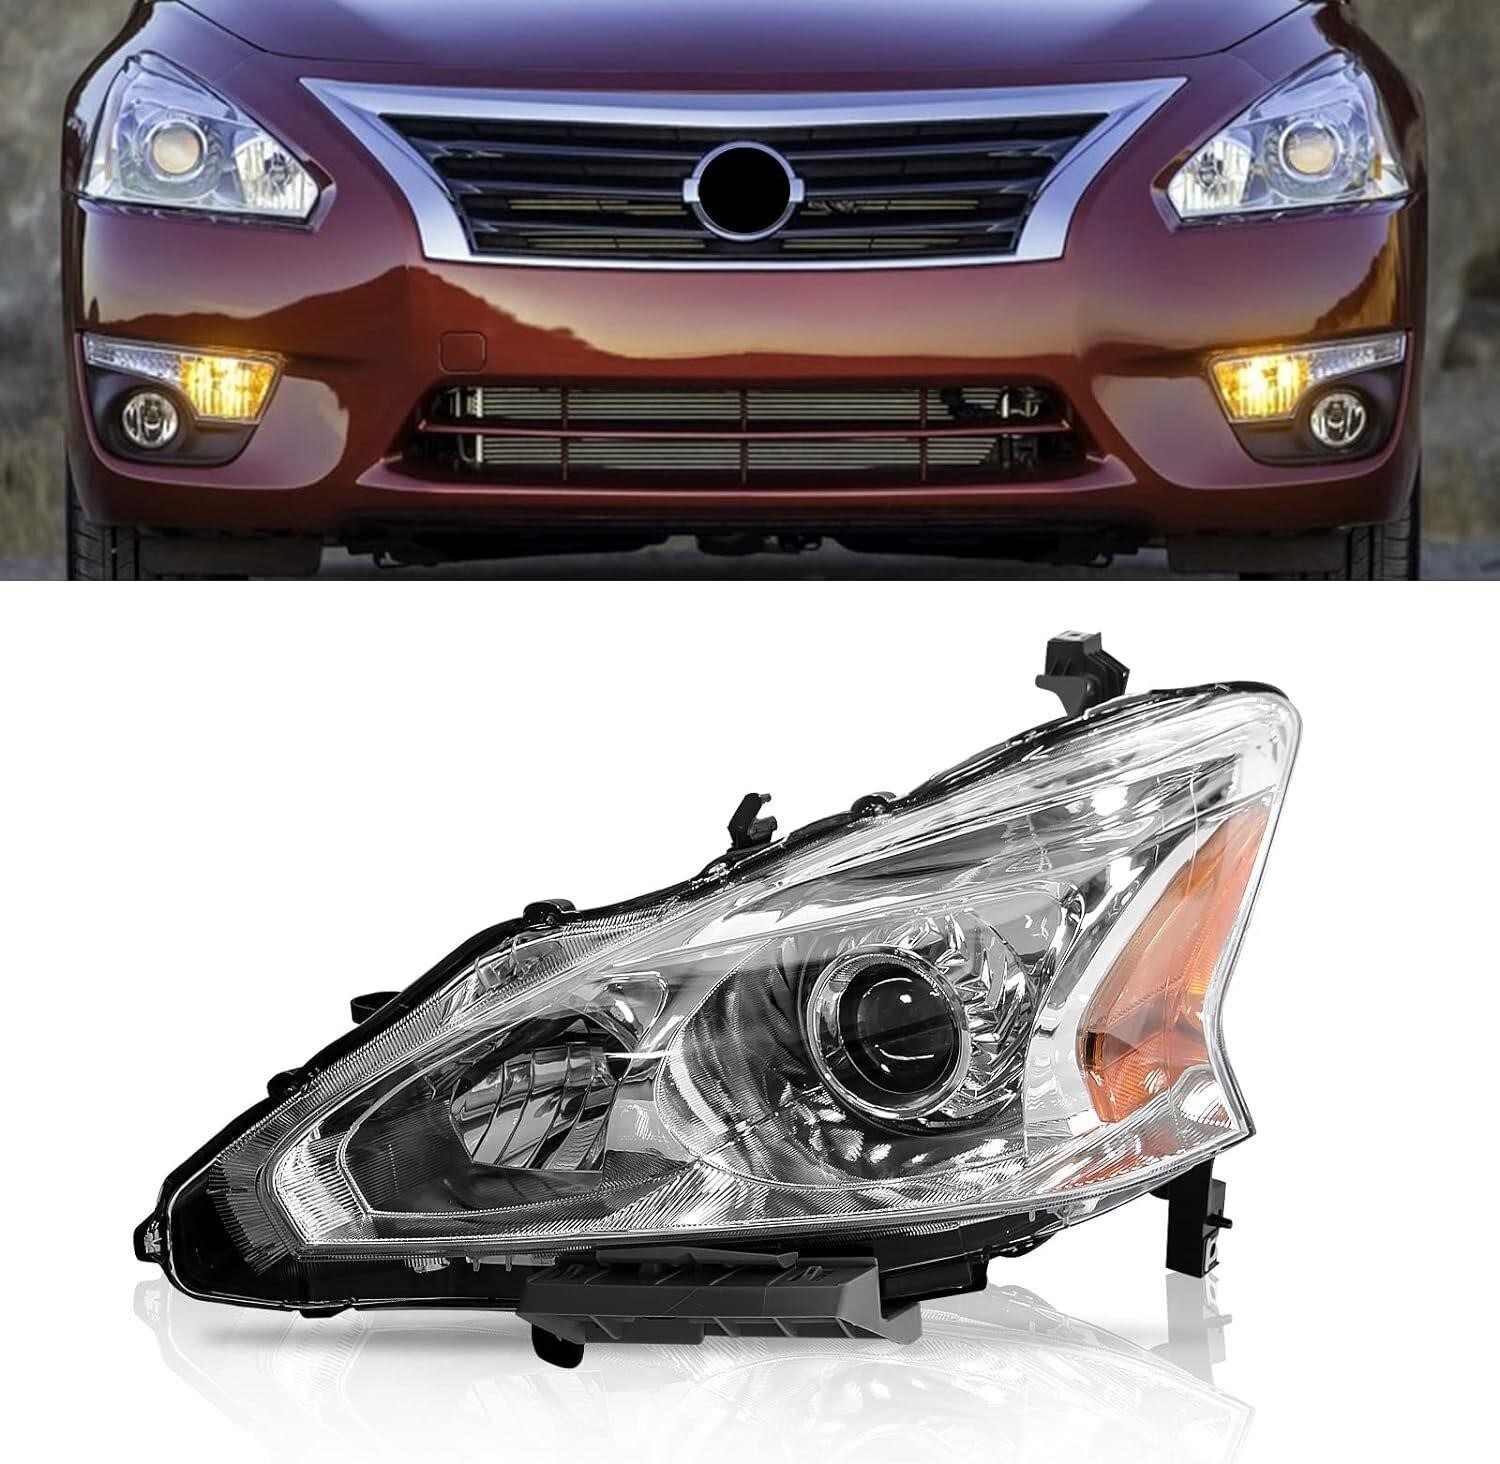 BoardRoad Headlight for 2013-2015 Nissan Altima